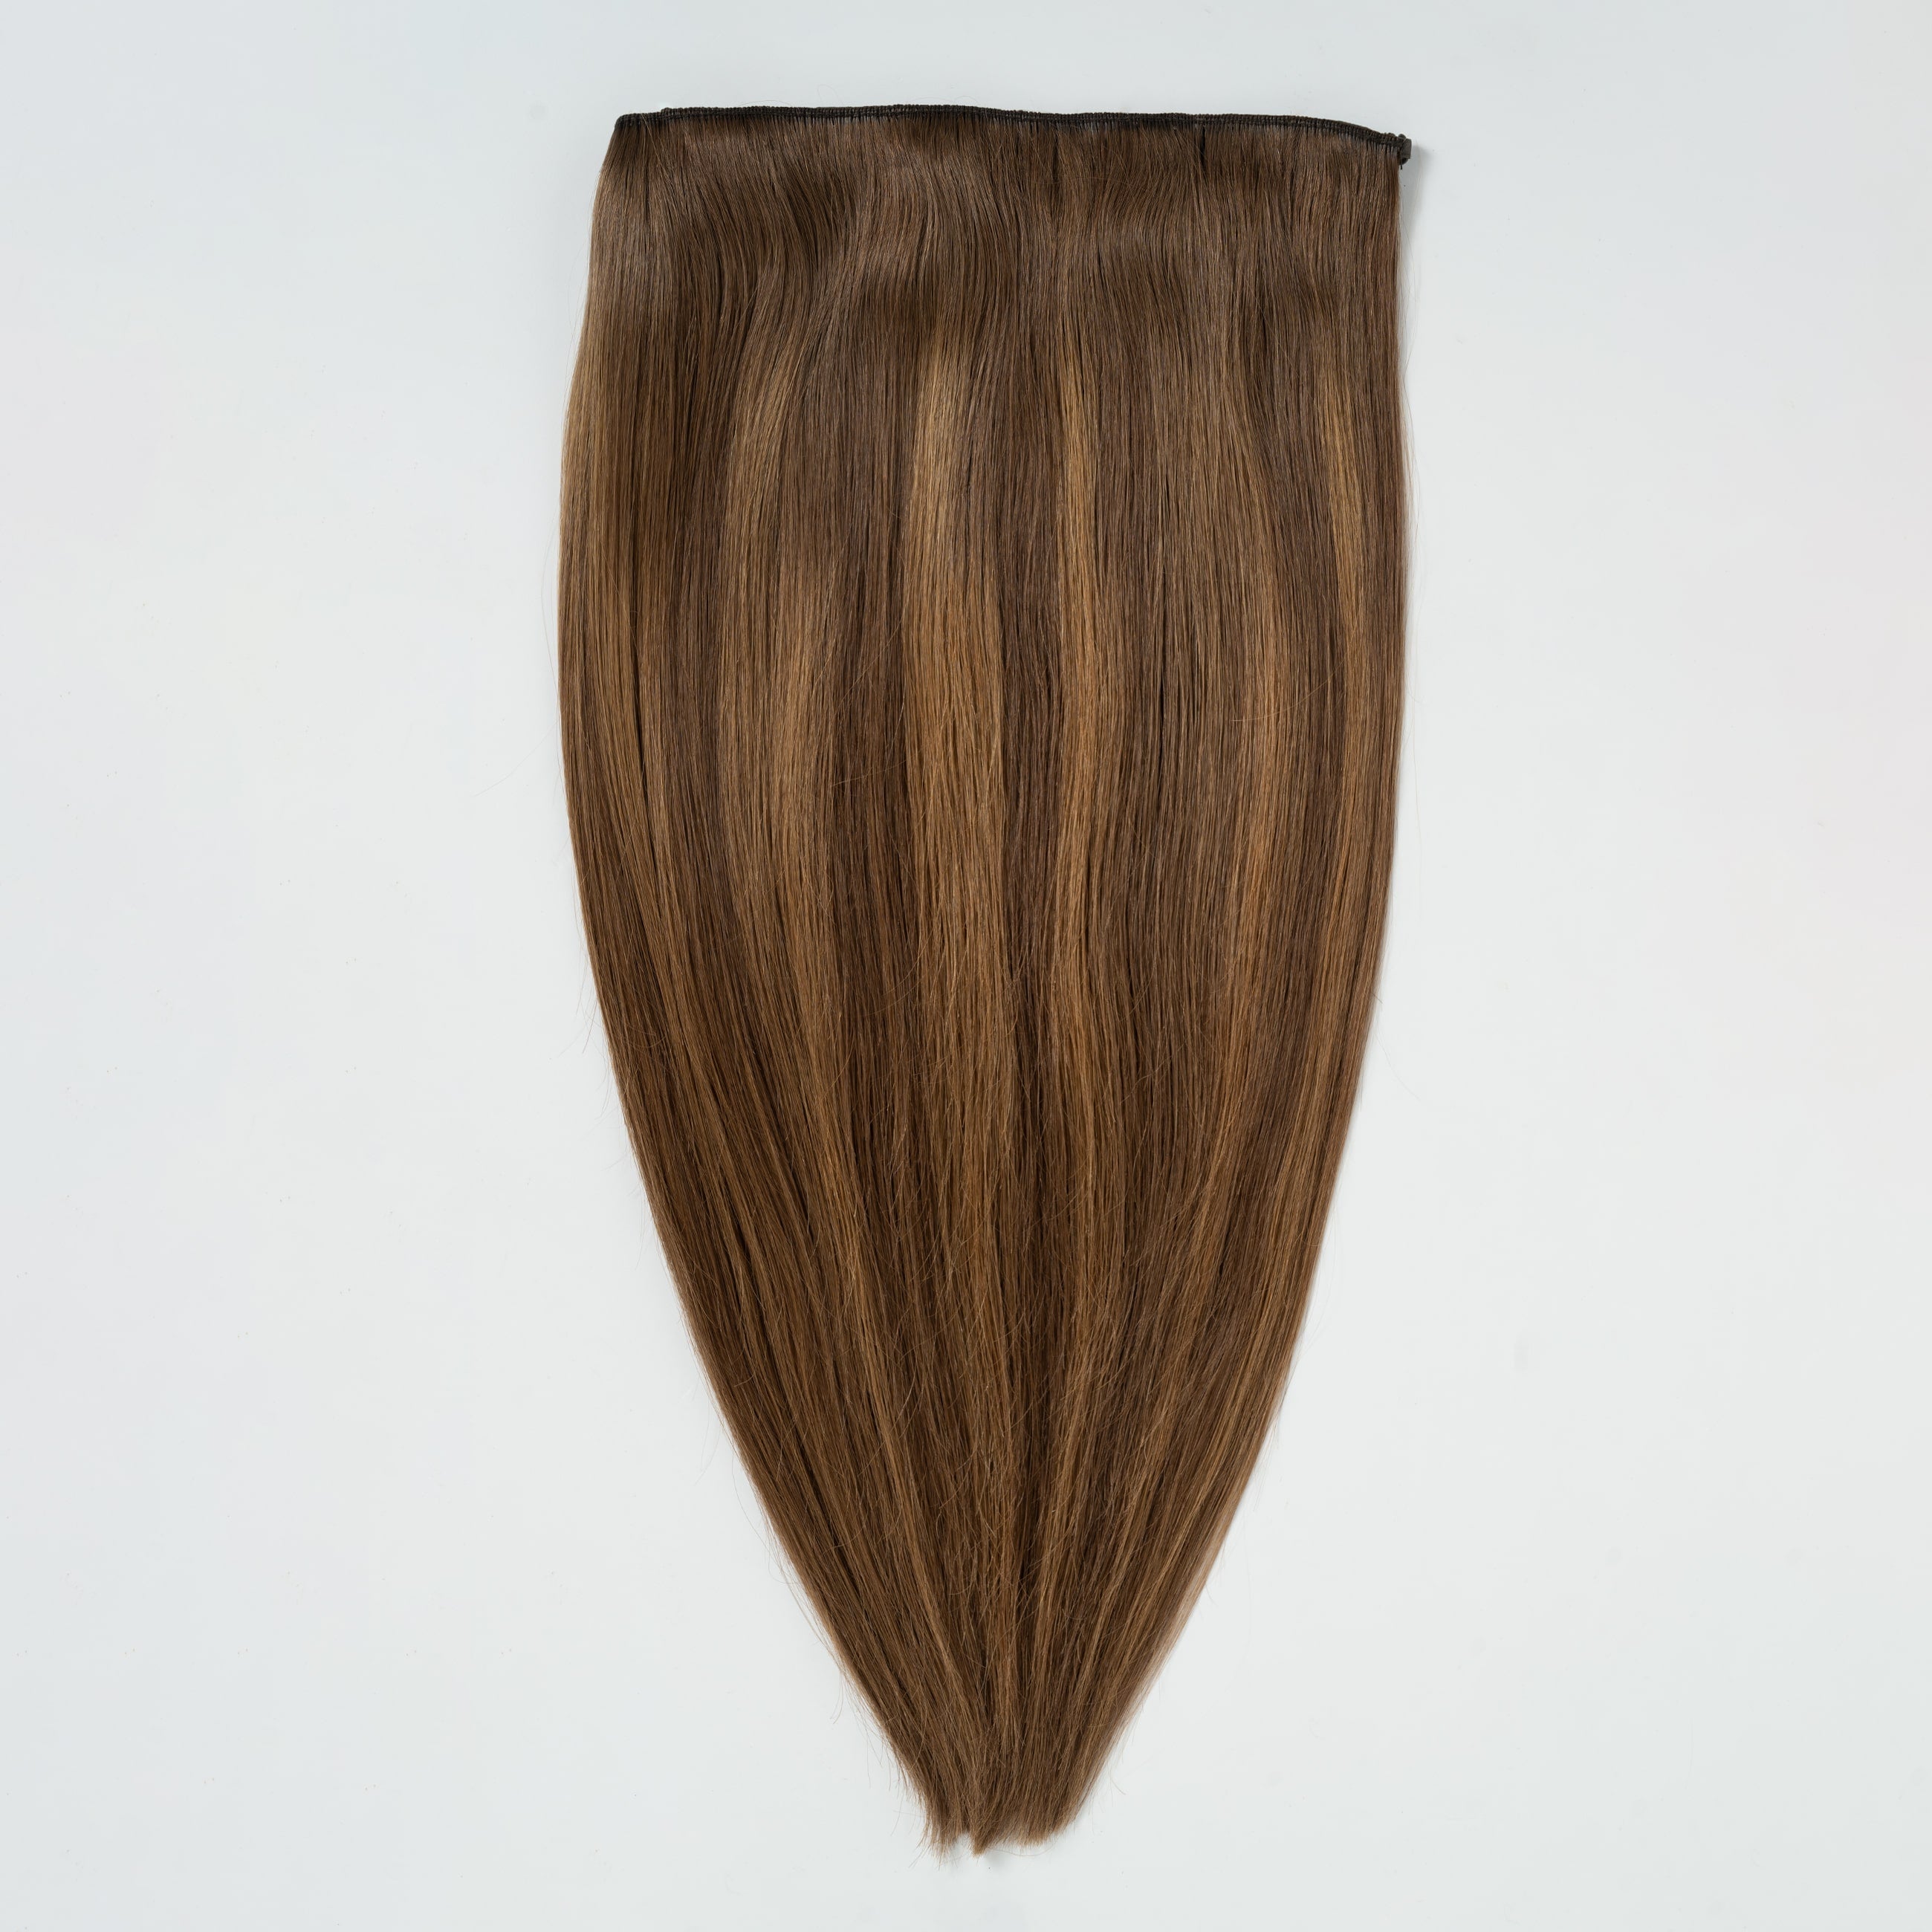 Halo hair extensions - Natural Brown Balayage 2B+5